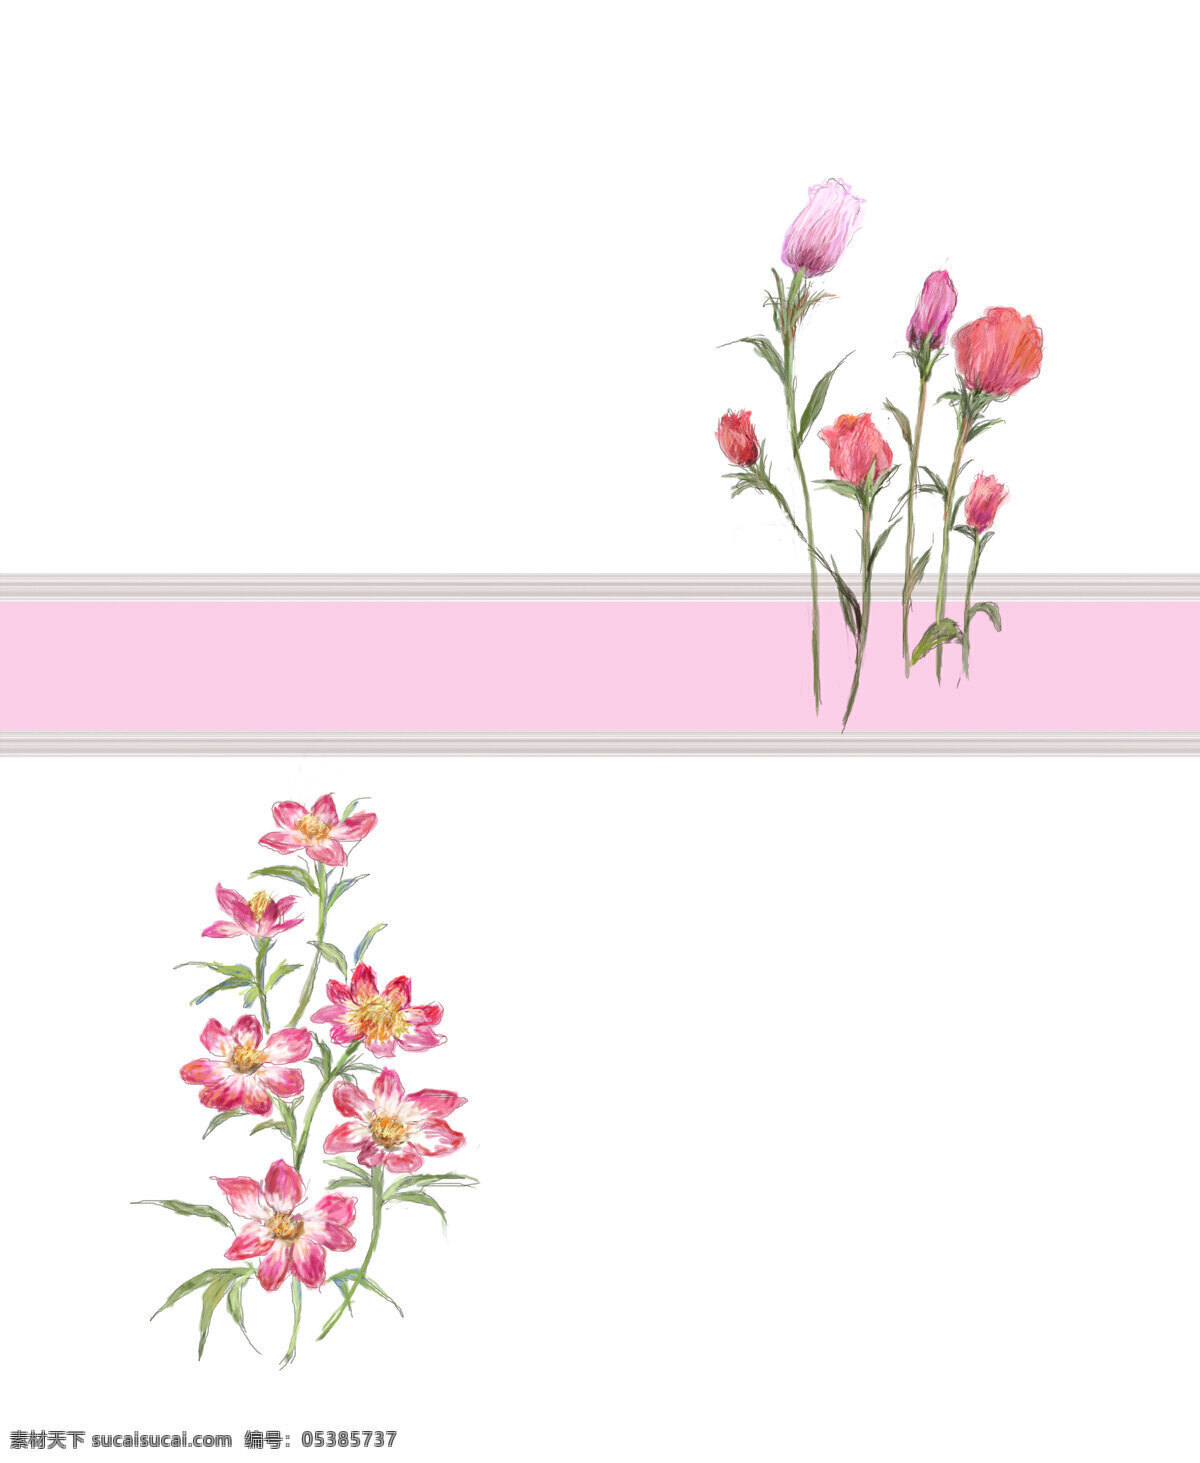 移门 花朵 鲜花 玫瑰 移门设计图 移门图案 底纹边框